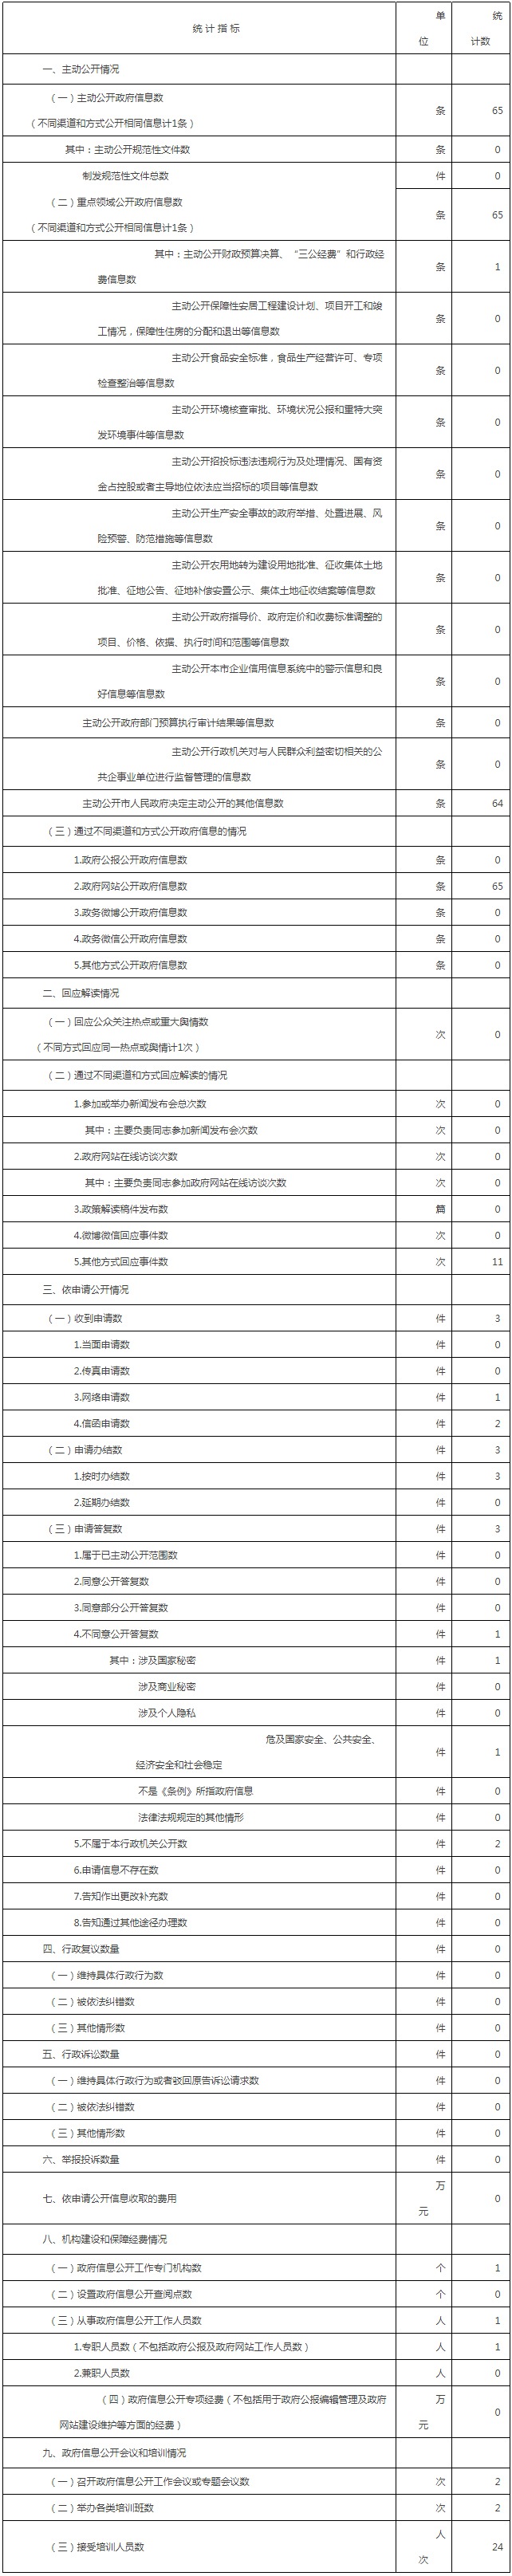 北京市人民政府天安門地區管理委員會政府信息公開情況統計表